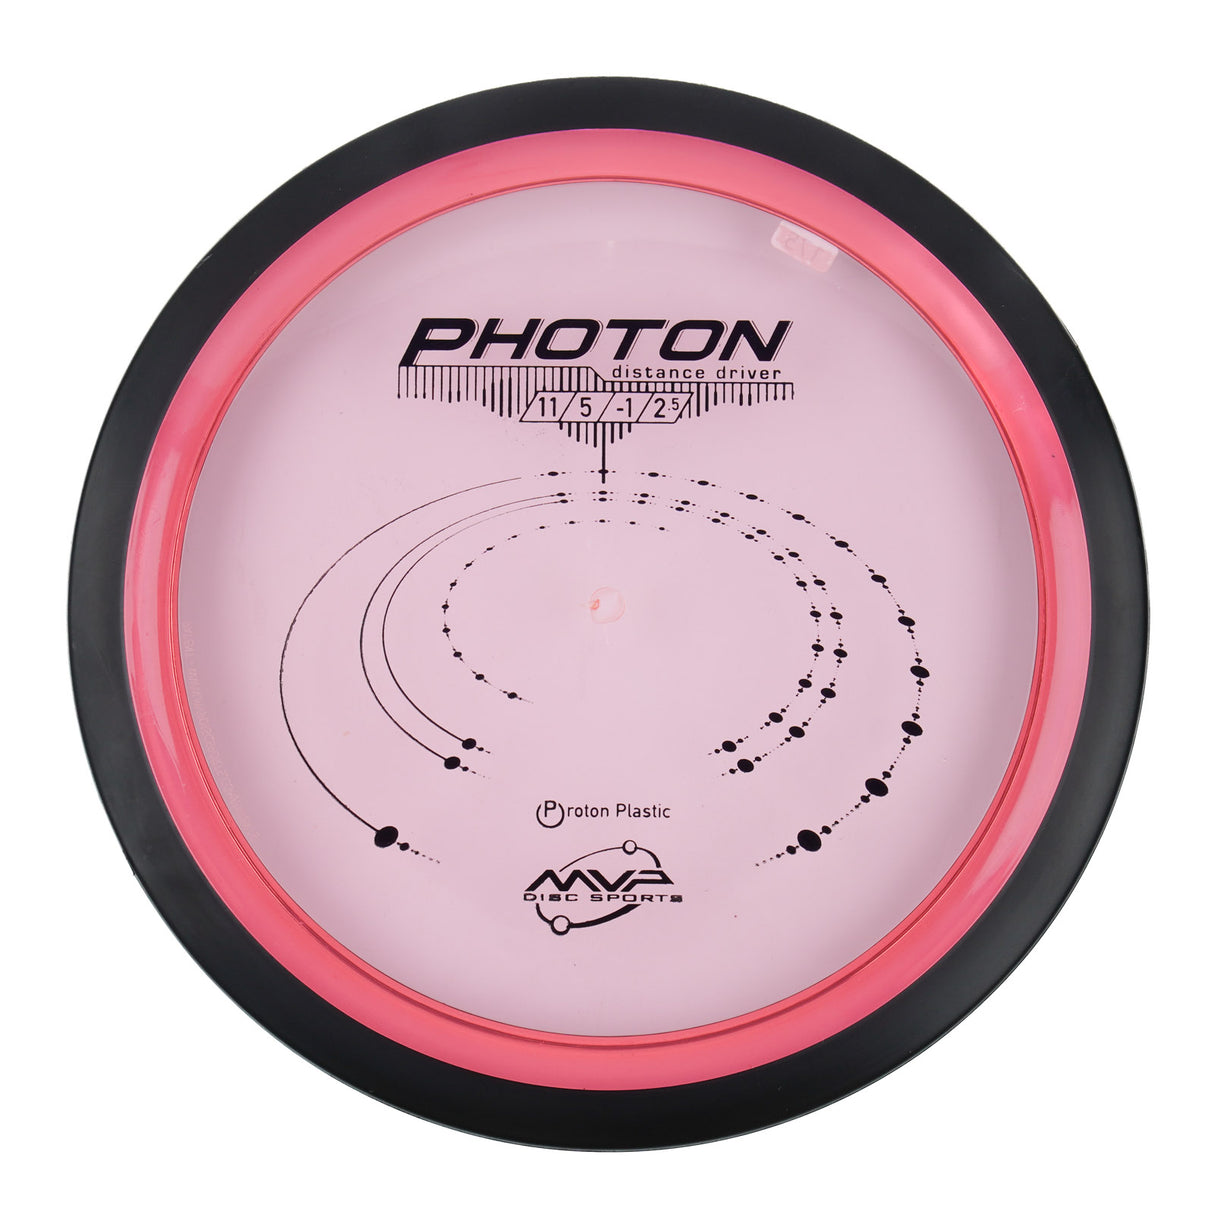 MVP Photon - Proton 177g | Style 0002